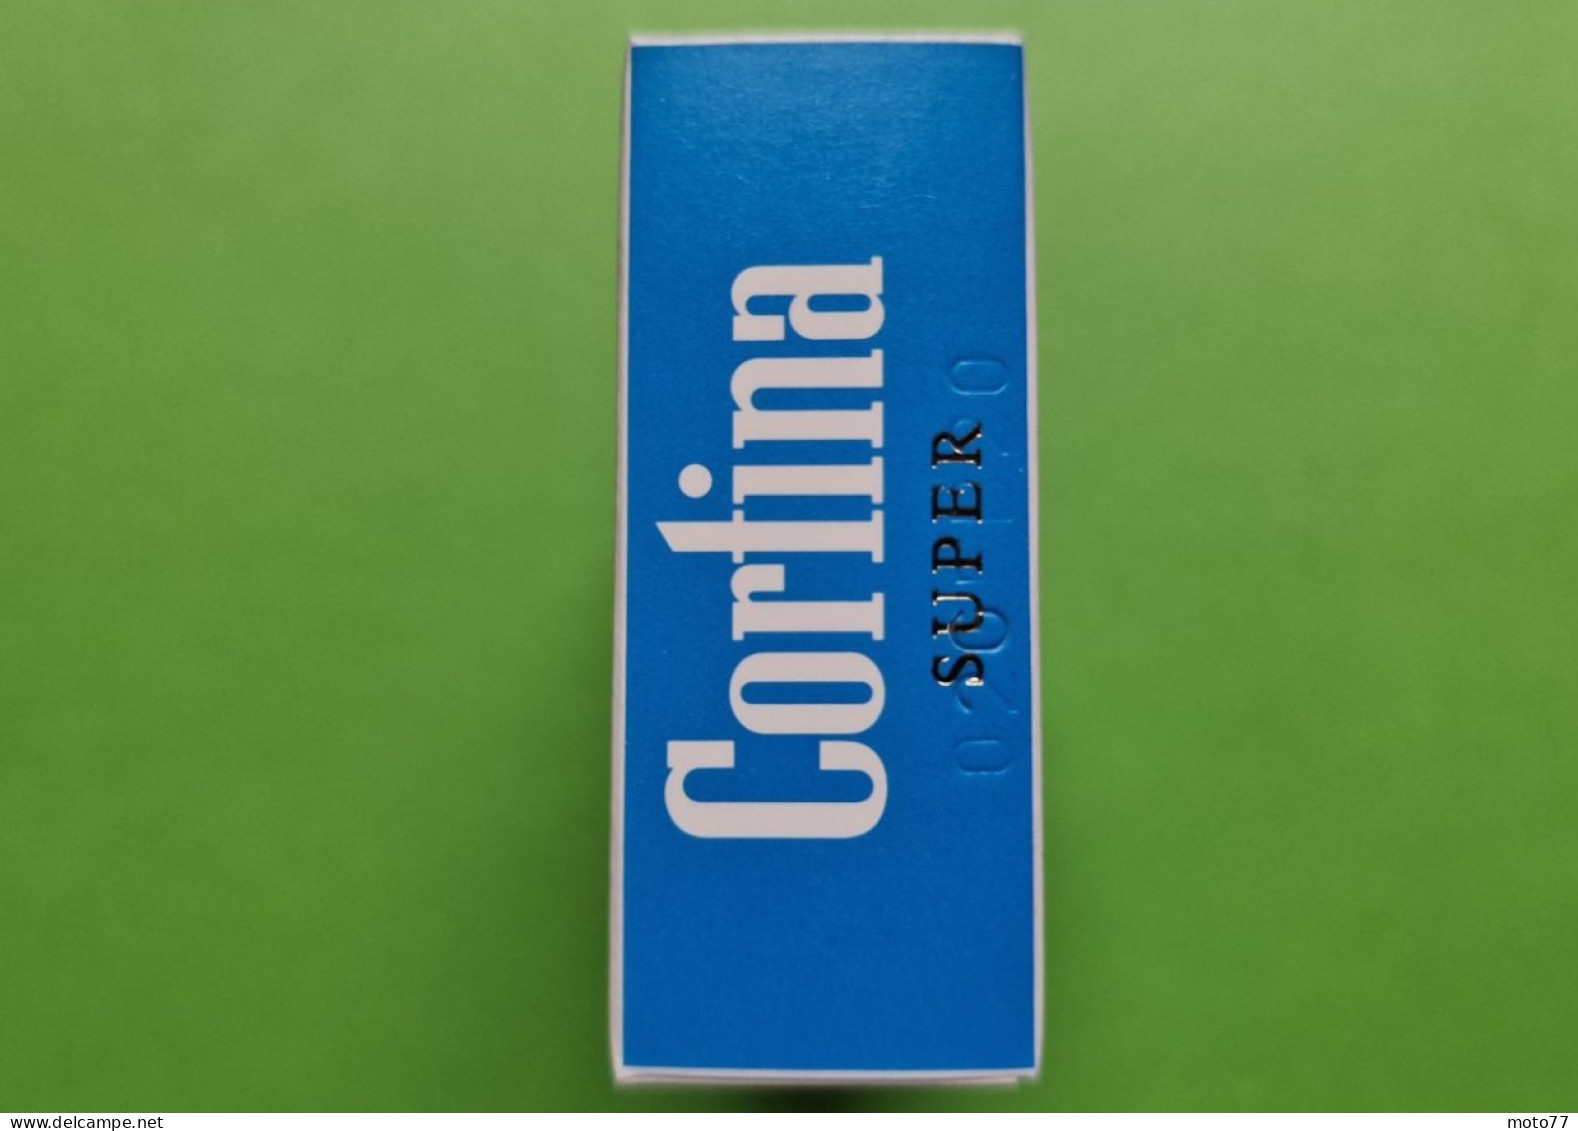 Ancien PAQUET De CIGARETTES Vide - CORLINA - Vers 1980 - Etuis à Cigarettes Vides